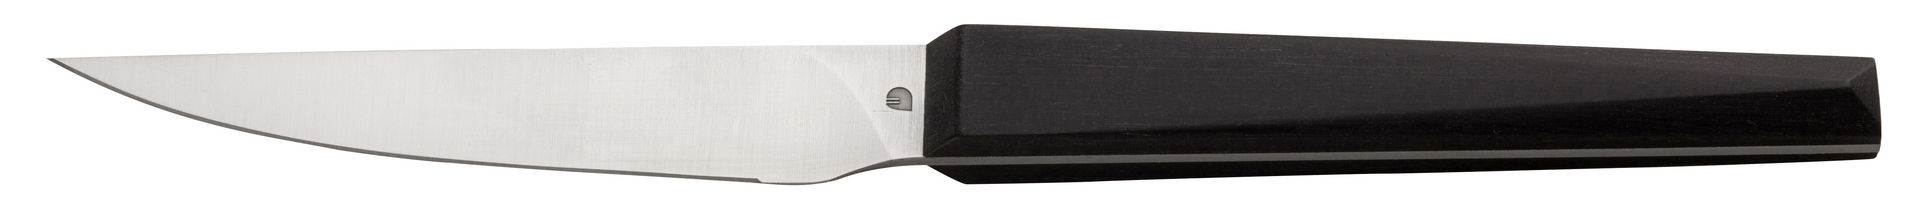 Rubis Steak Knife Dark - F42010-000000-B01012 (Pack of 12)